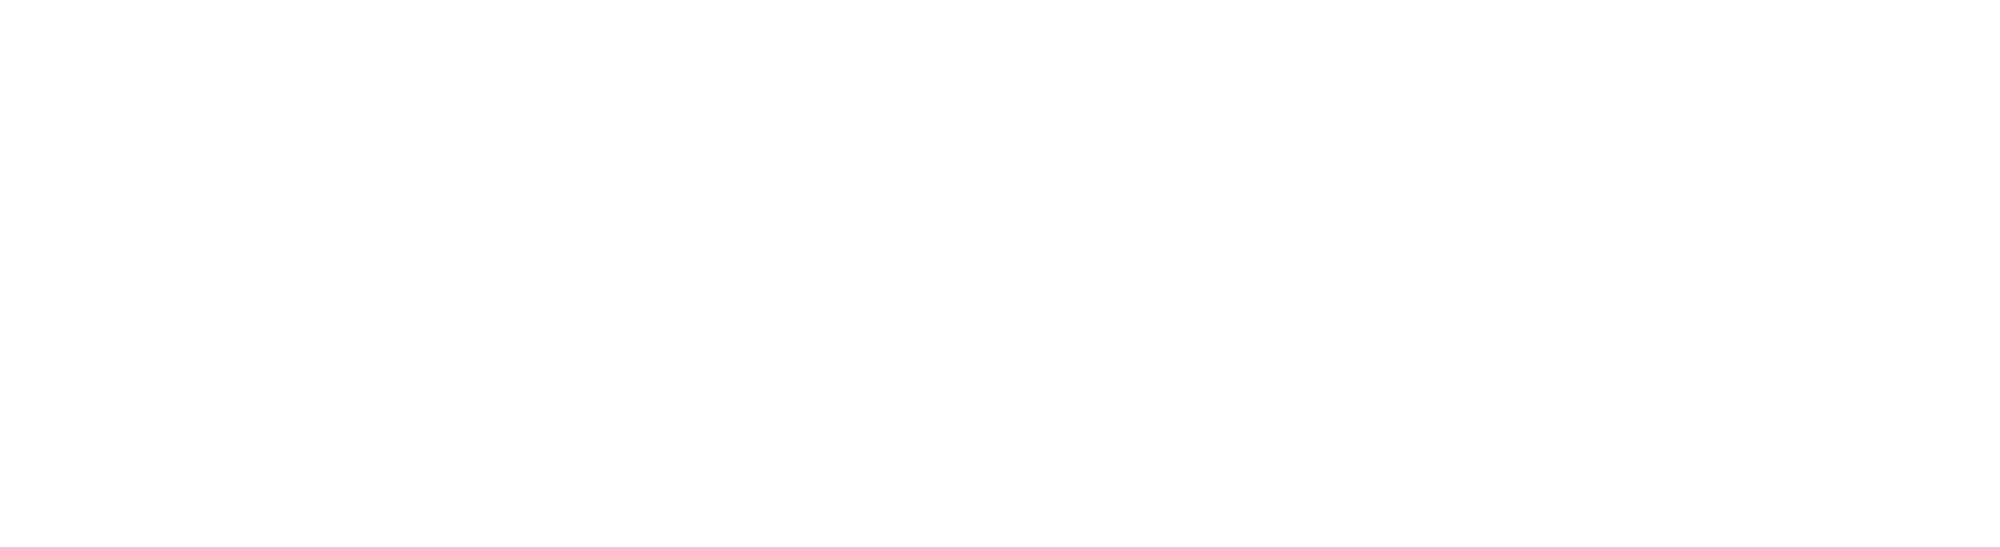 NUROモバイル「超」入門ガイド